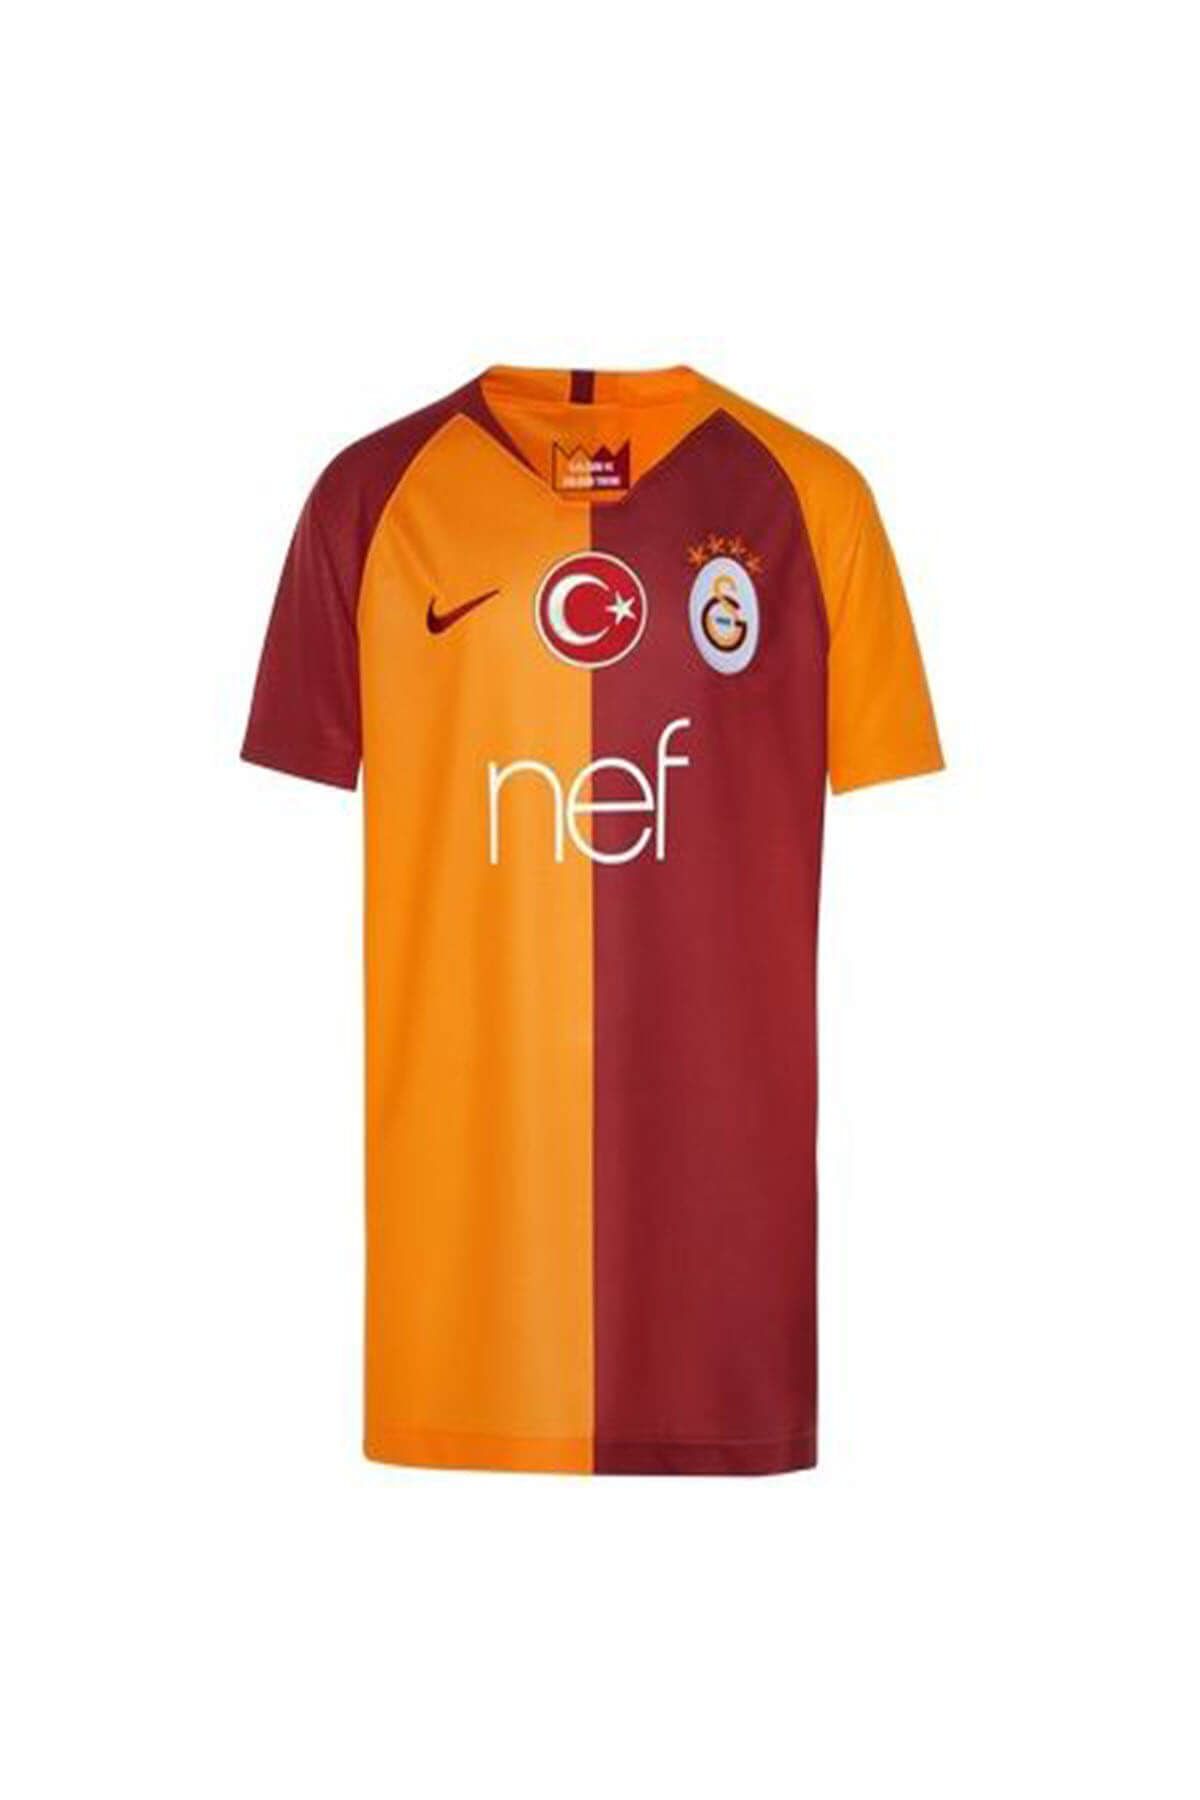 Galatasaray Galatasaray '18-19 Parçalı Genç Çocuk İç Saha Forması 919239-837